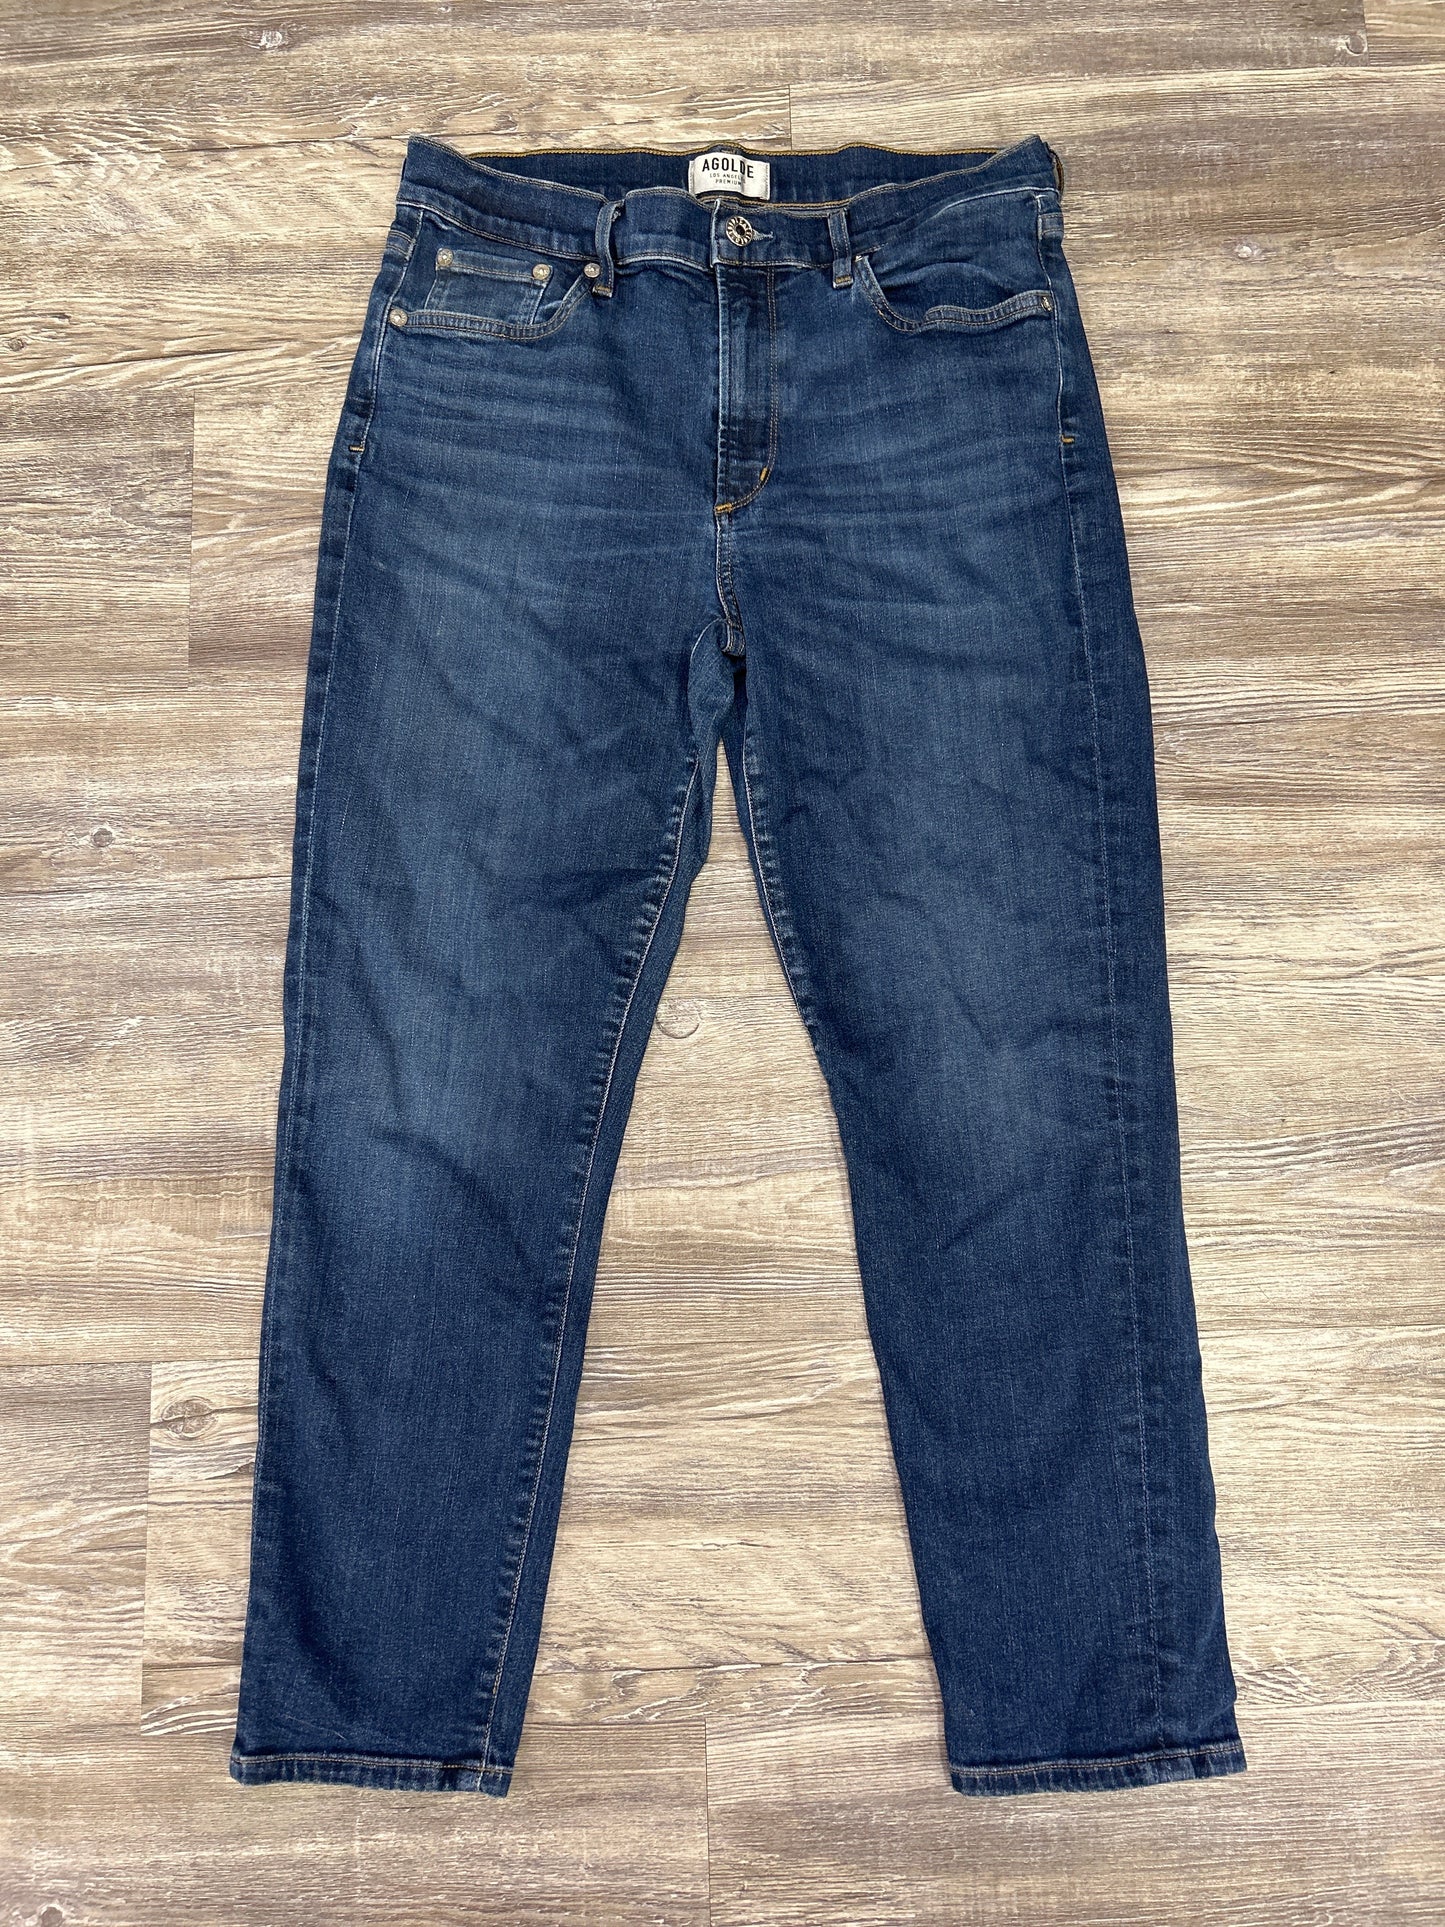 Blue Denim Jeans Designer Agolde, Size 12